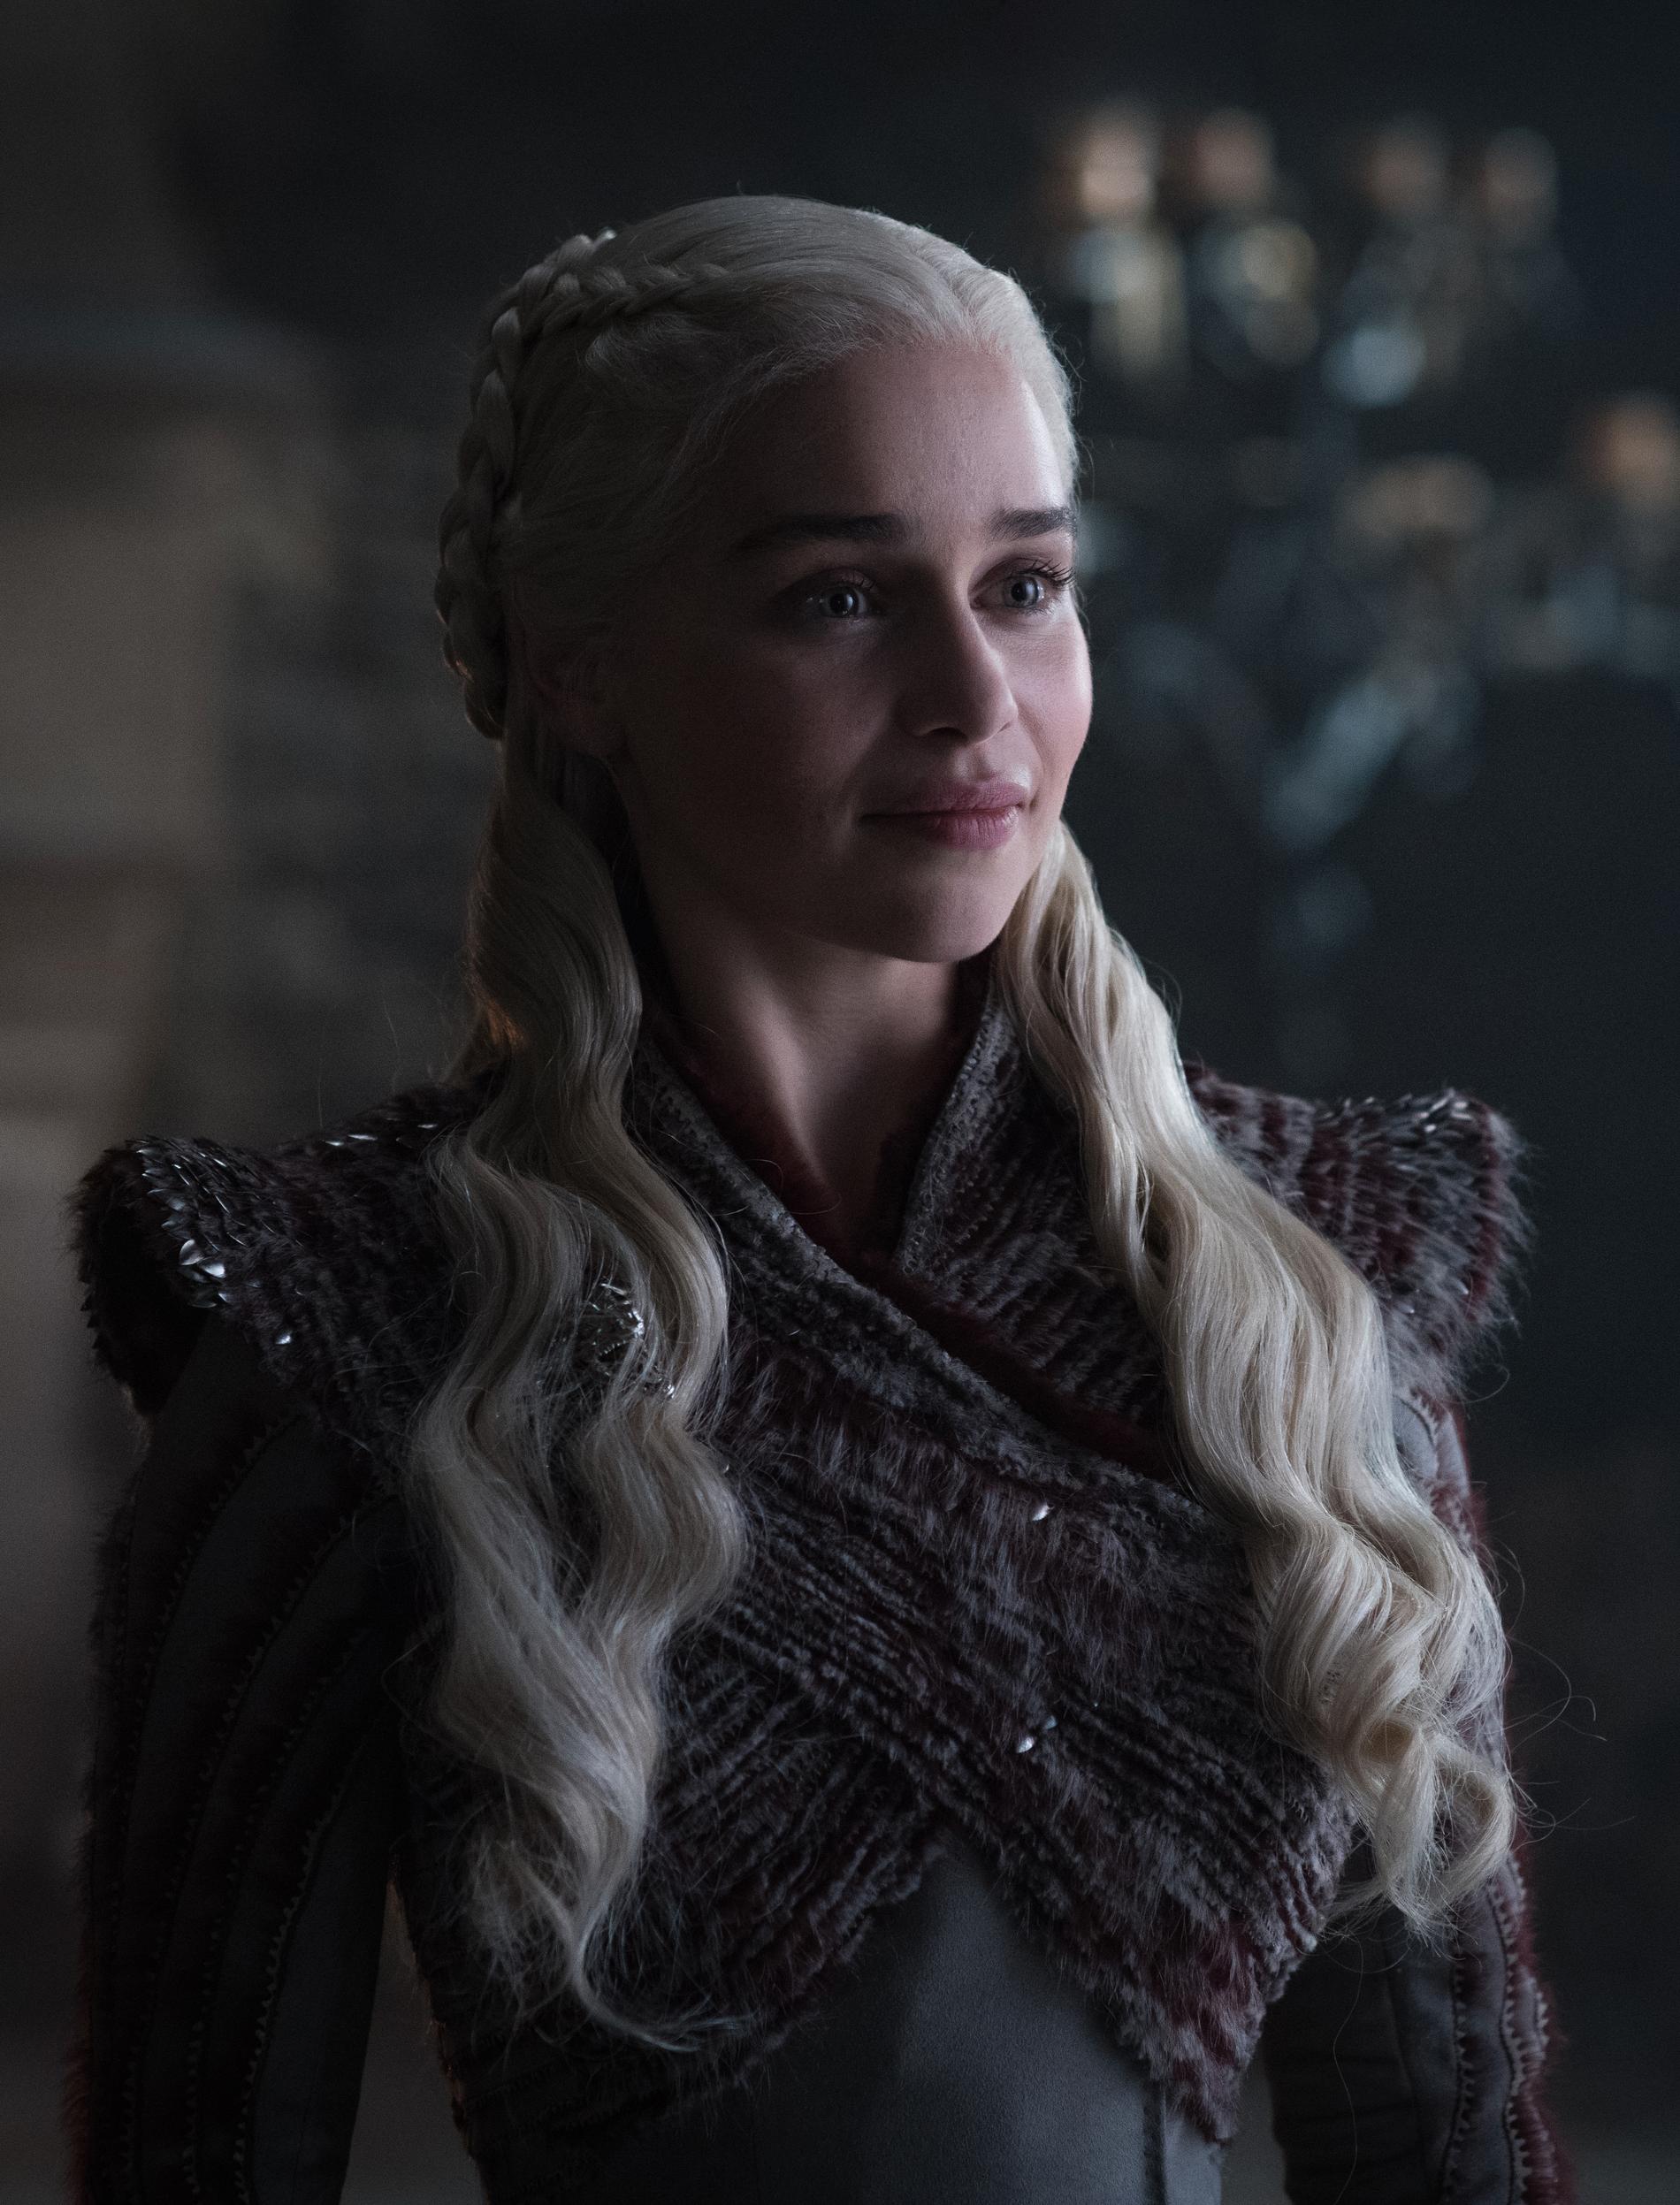 Ju längre norr ut karaktärerna kommer desto varmare kläder behöver de. Daenerys kläder börjar mer och mer spegla hennes familjs färger i svart och rött.